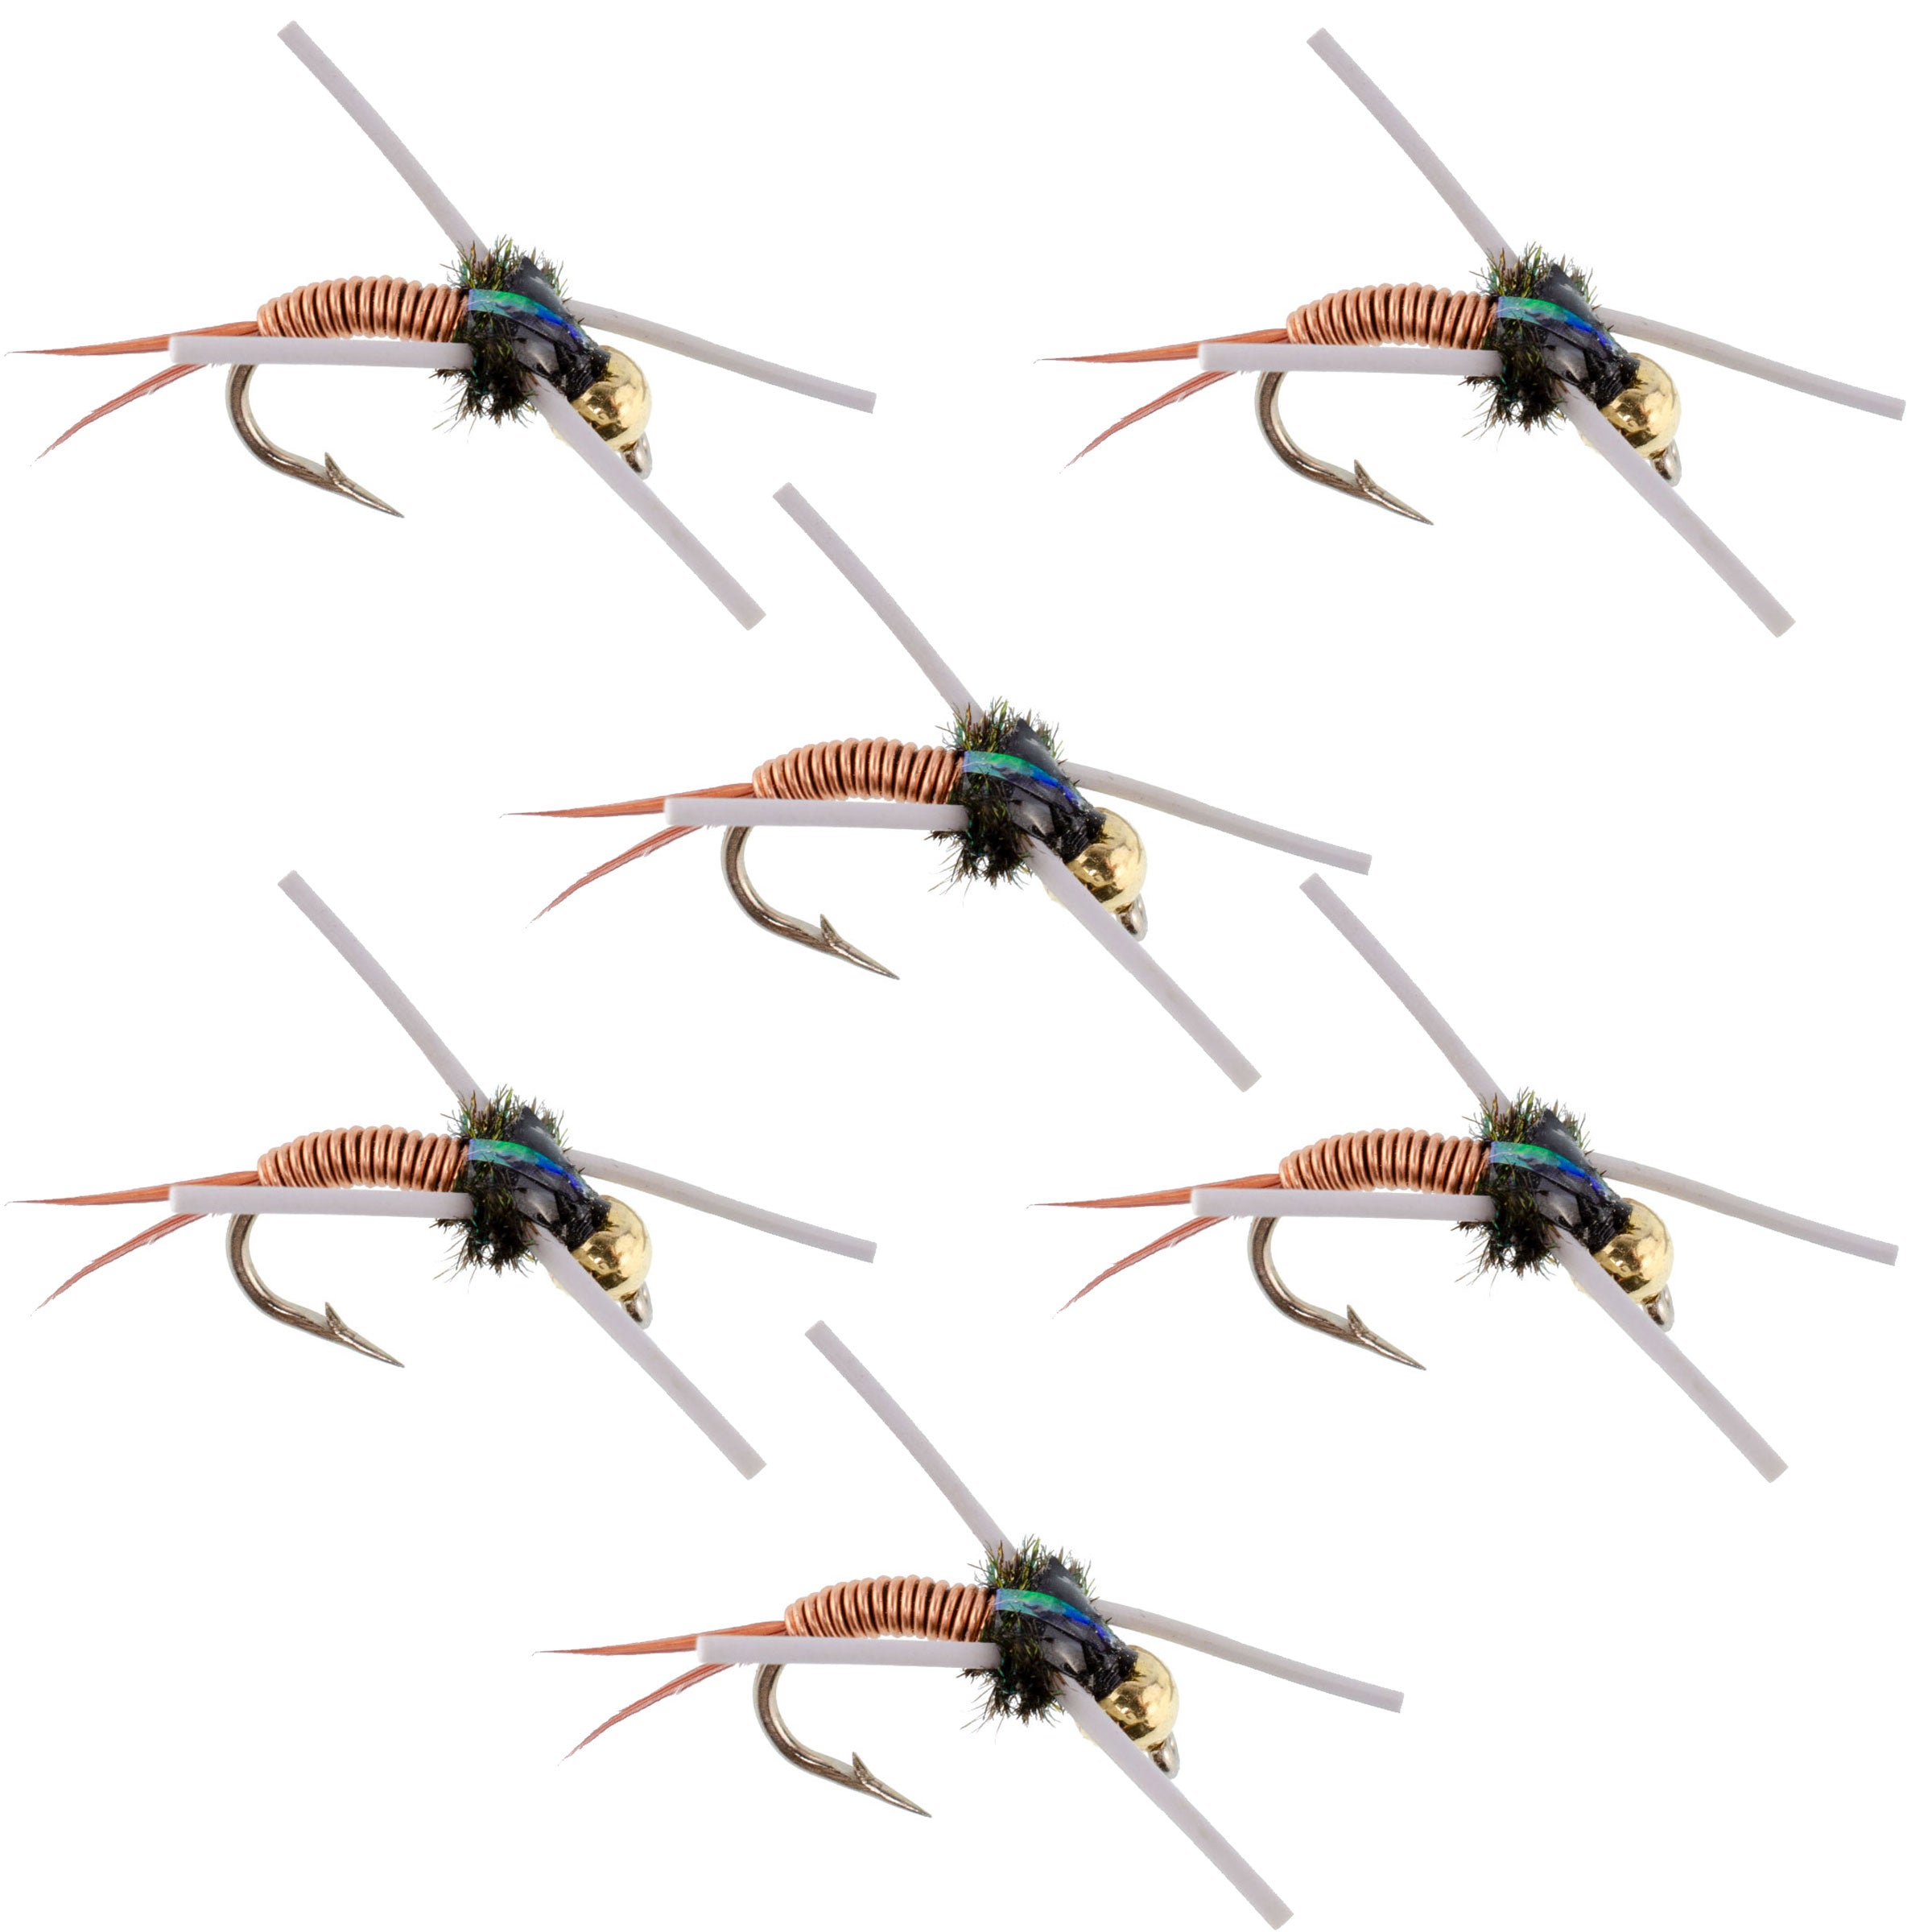 Tungsten Bead Head Rubber Legs Copper John Nymph Fly Fishing Flies - Set of 6 Flies Hook Size 12